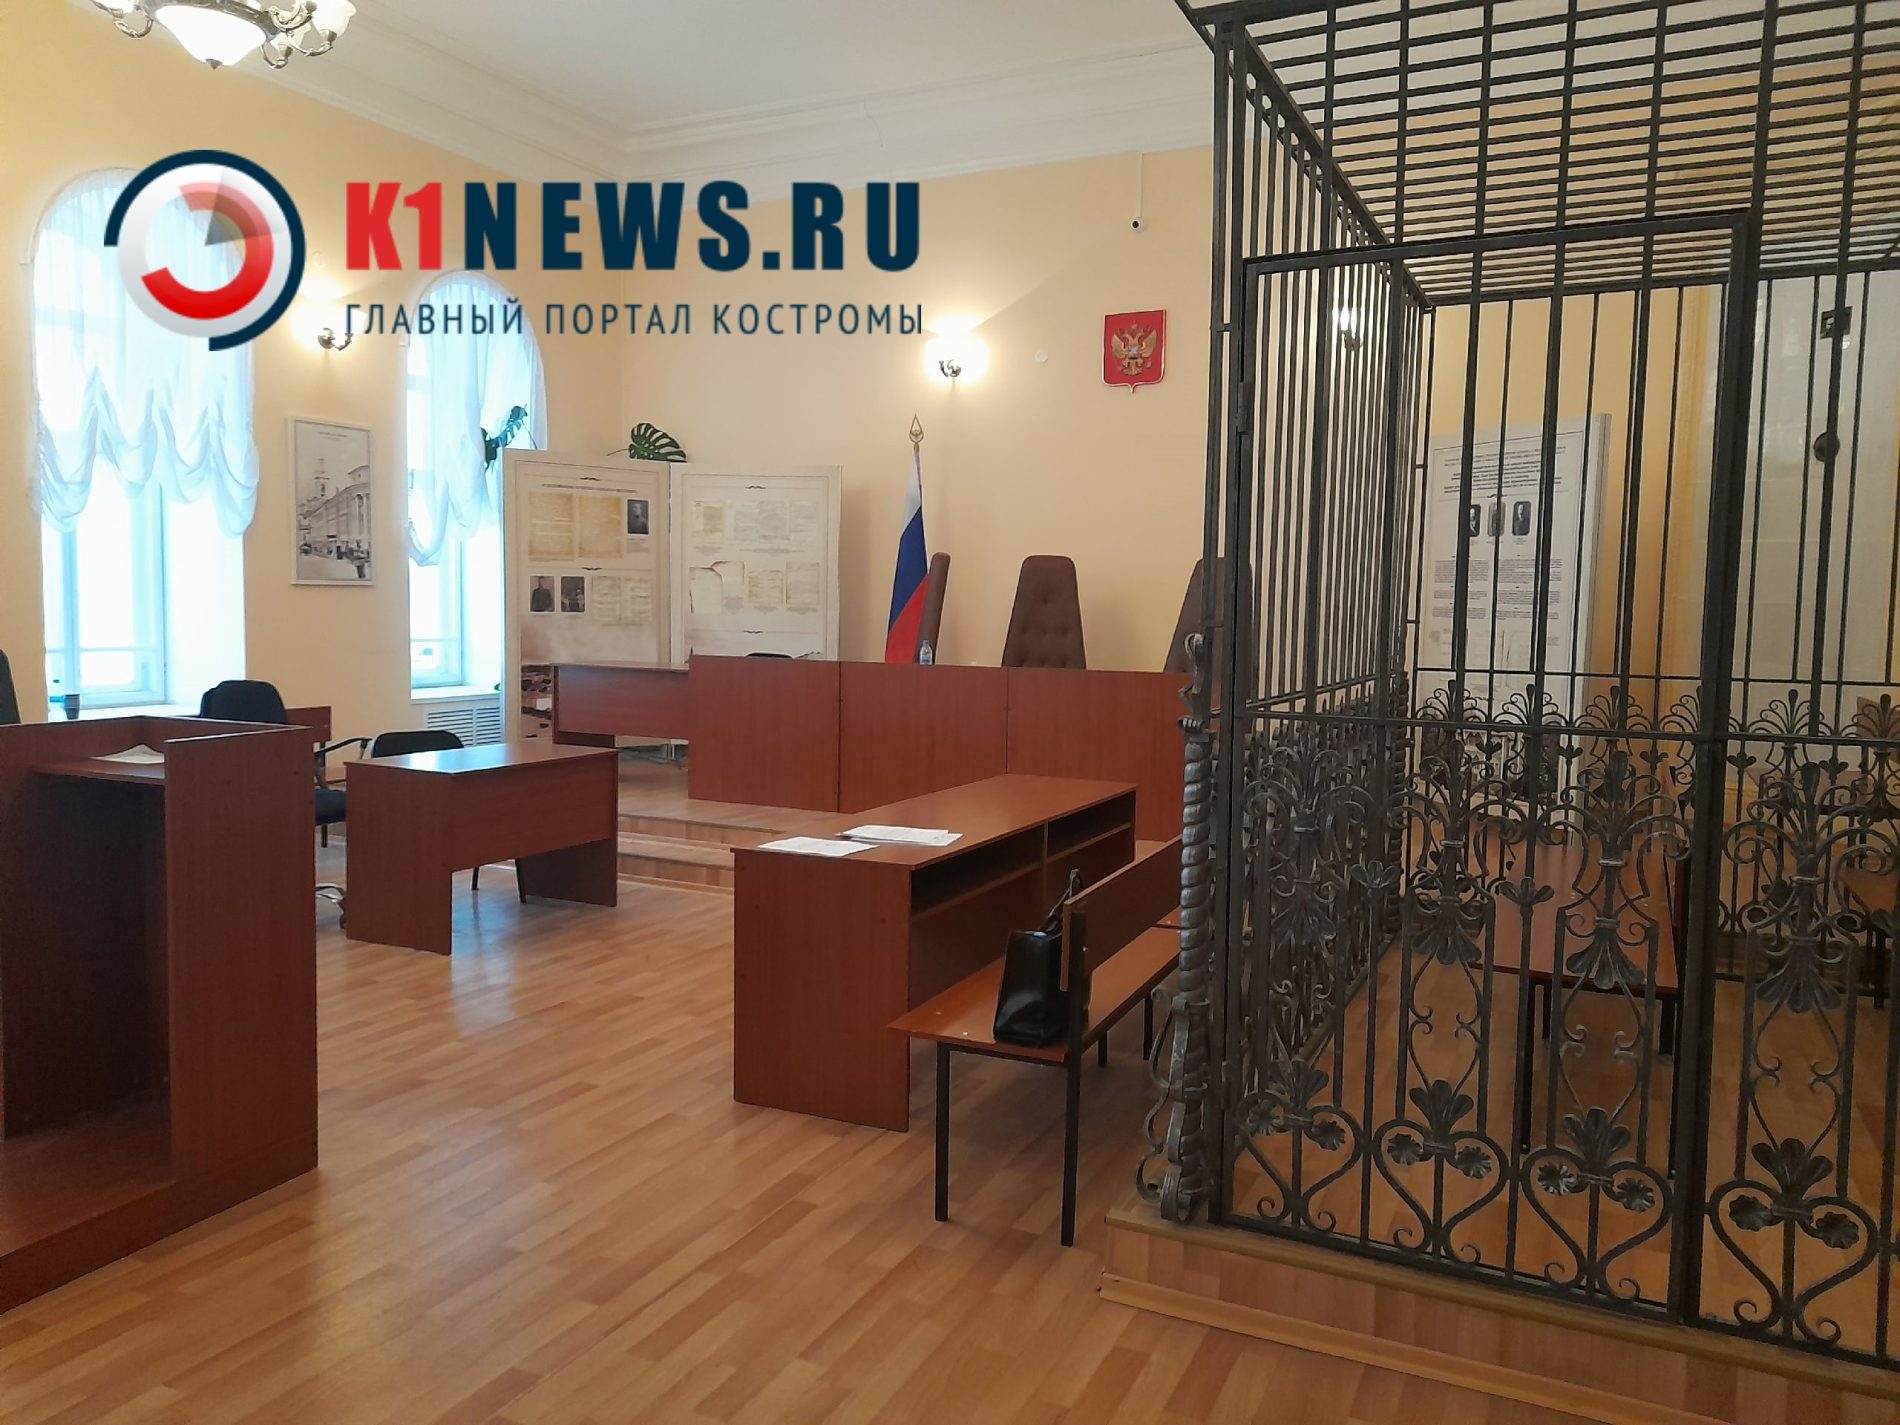 Костромской суд наказал осужденного за наколки с нацистской символикой